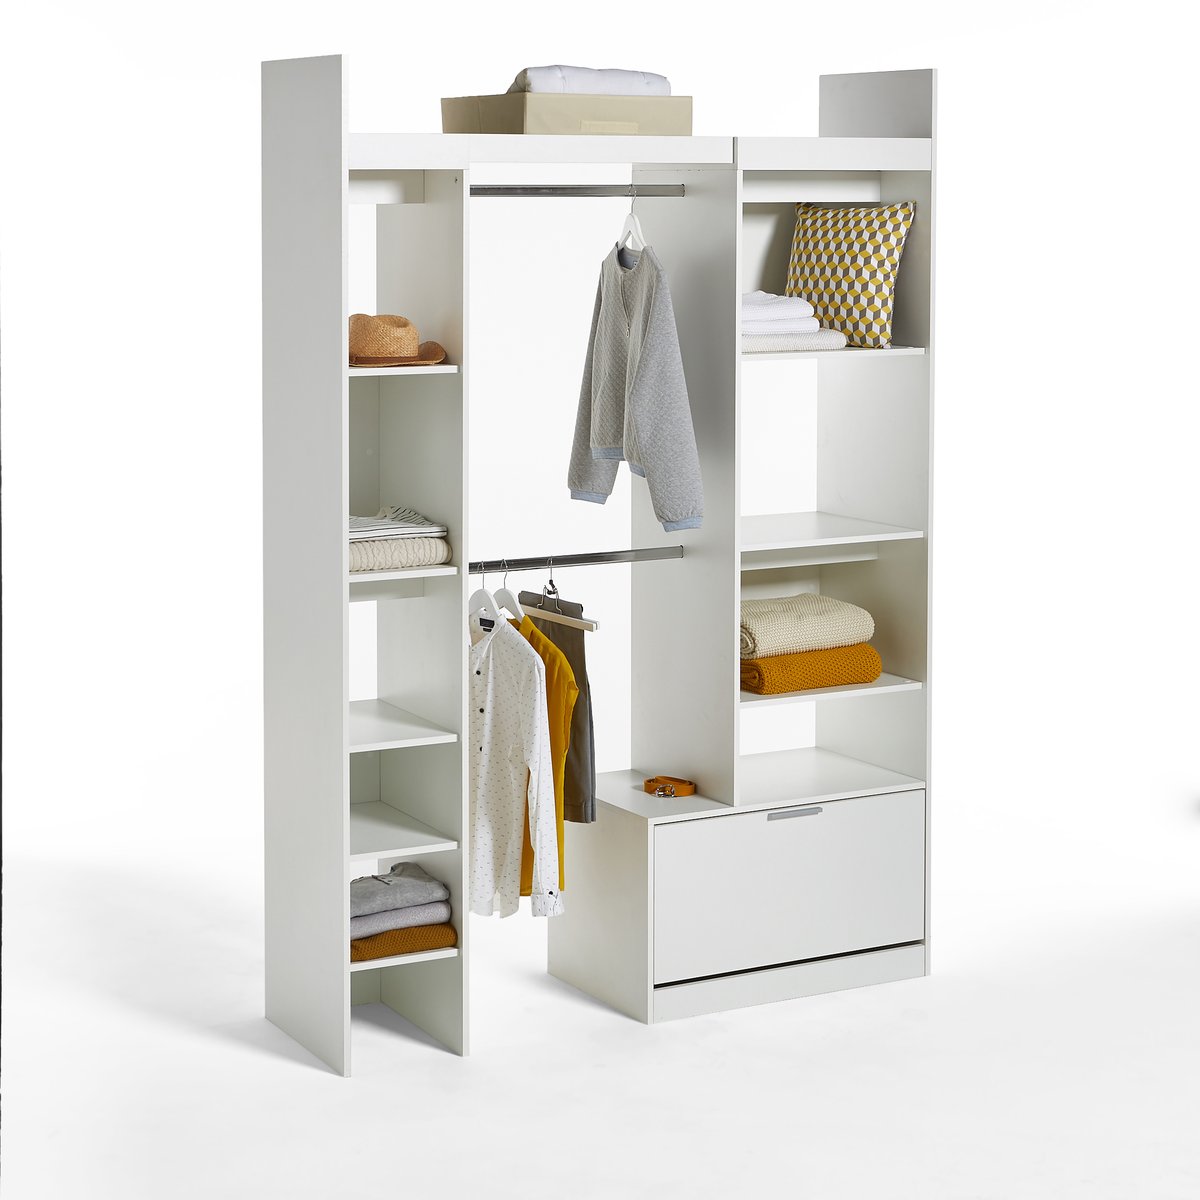 Шкаф Платяной модульный с этажерками и 2 отделениями для вешалок Yann единый размер белый